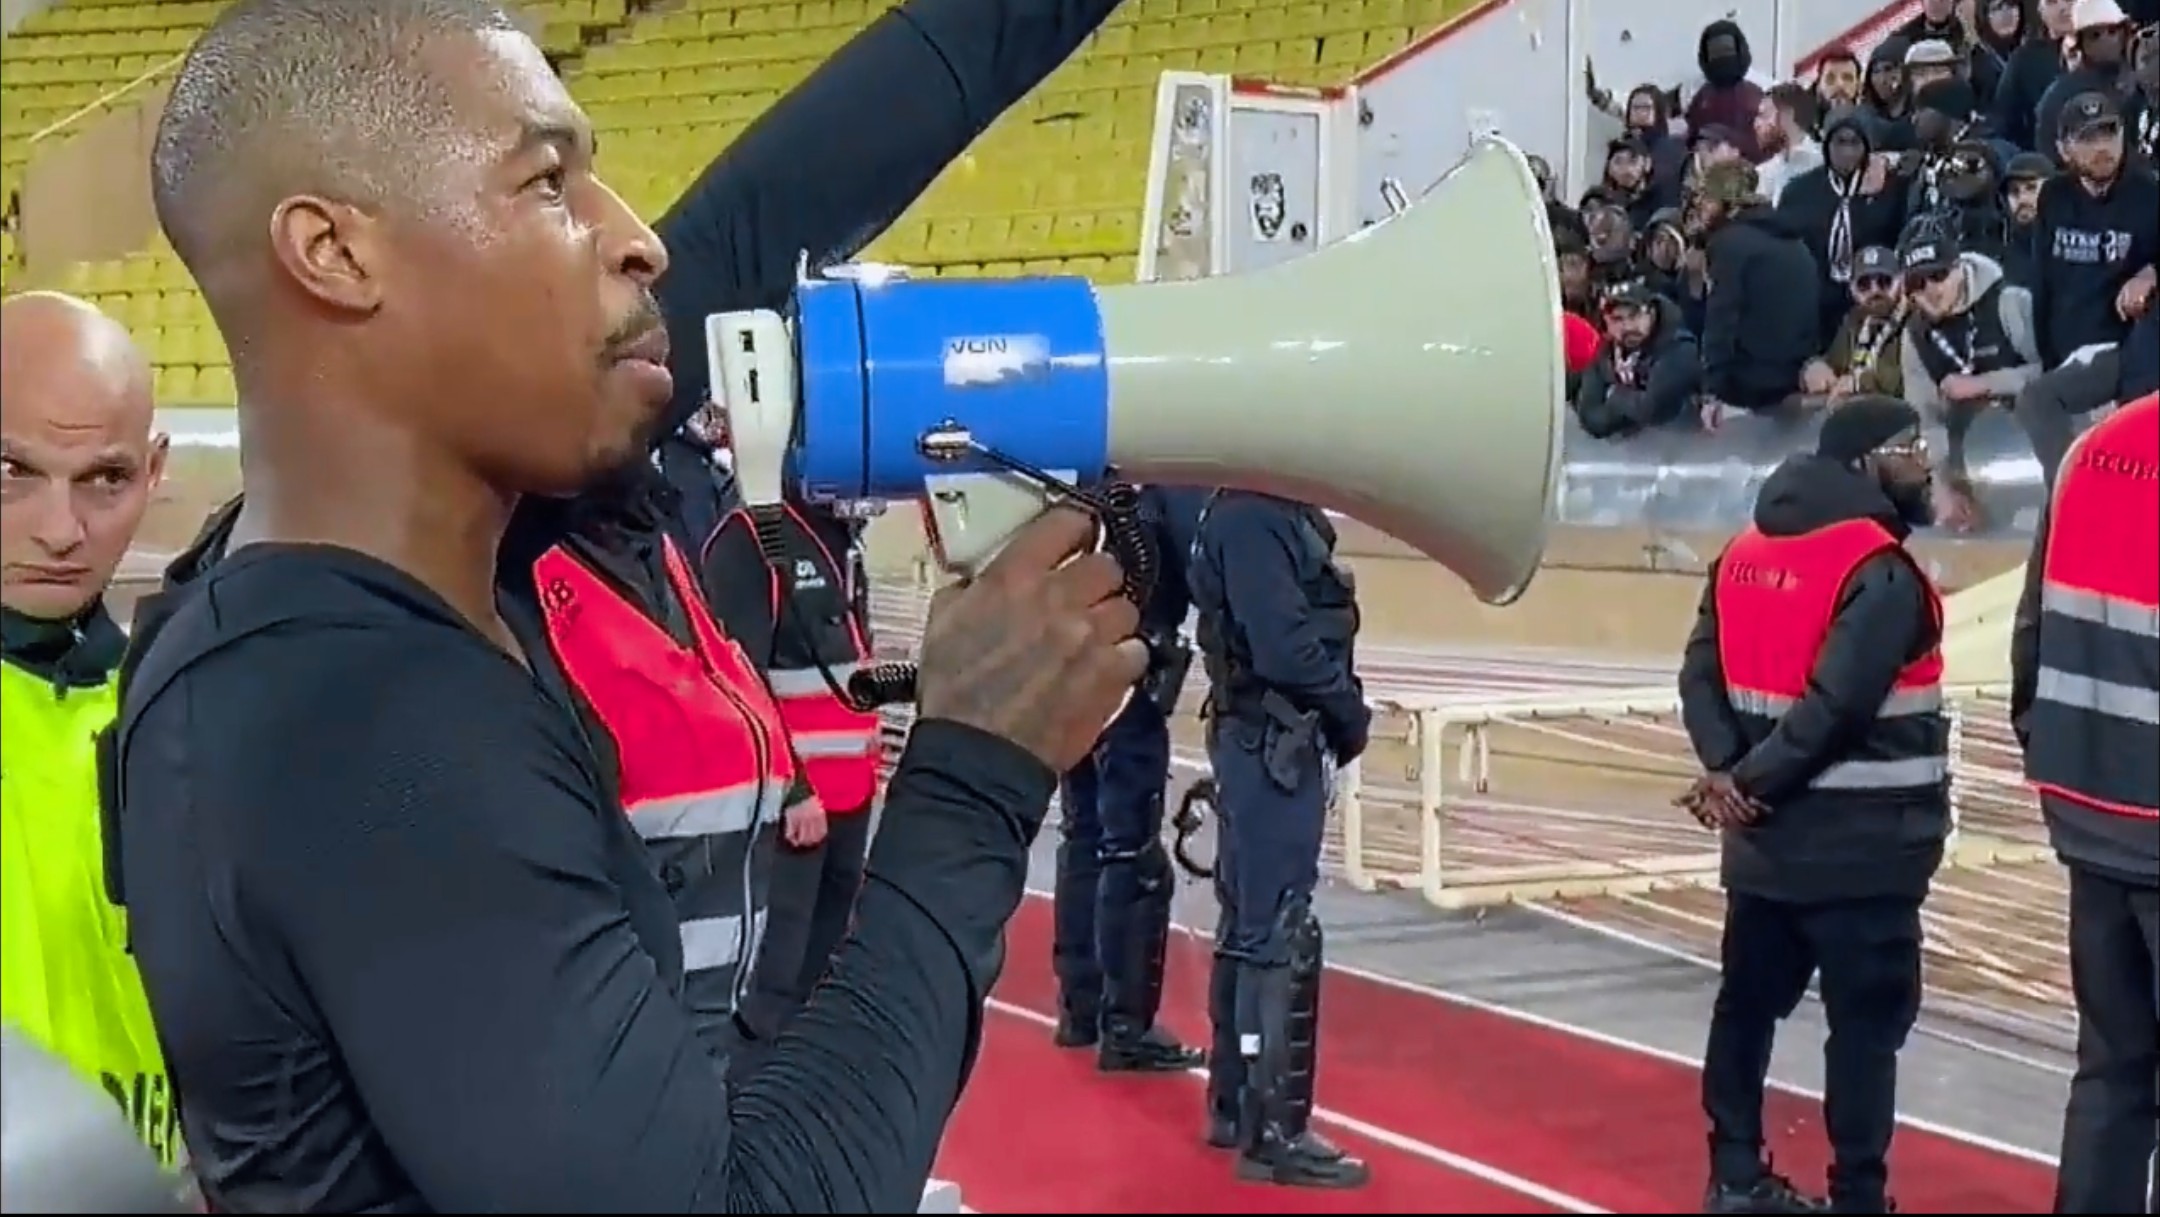 Kimpembe bocsánatot kért a PSG szurkolóktól a Monaco elleni meccsért – VIDEÓ